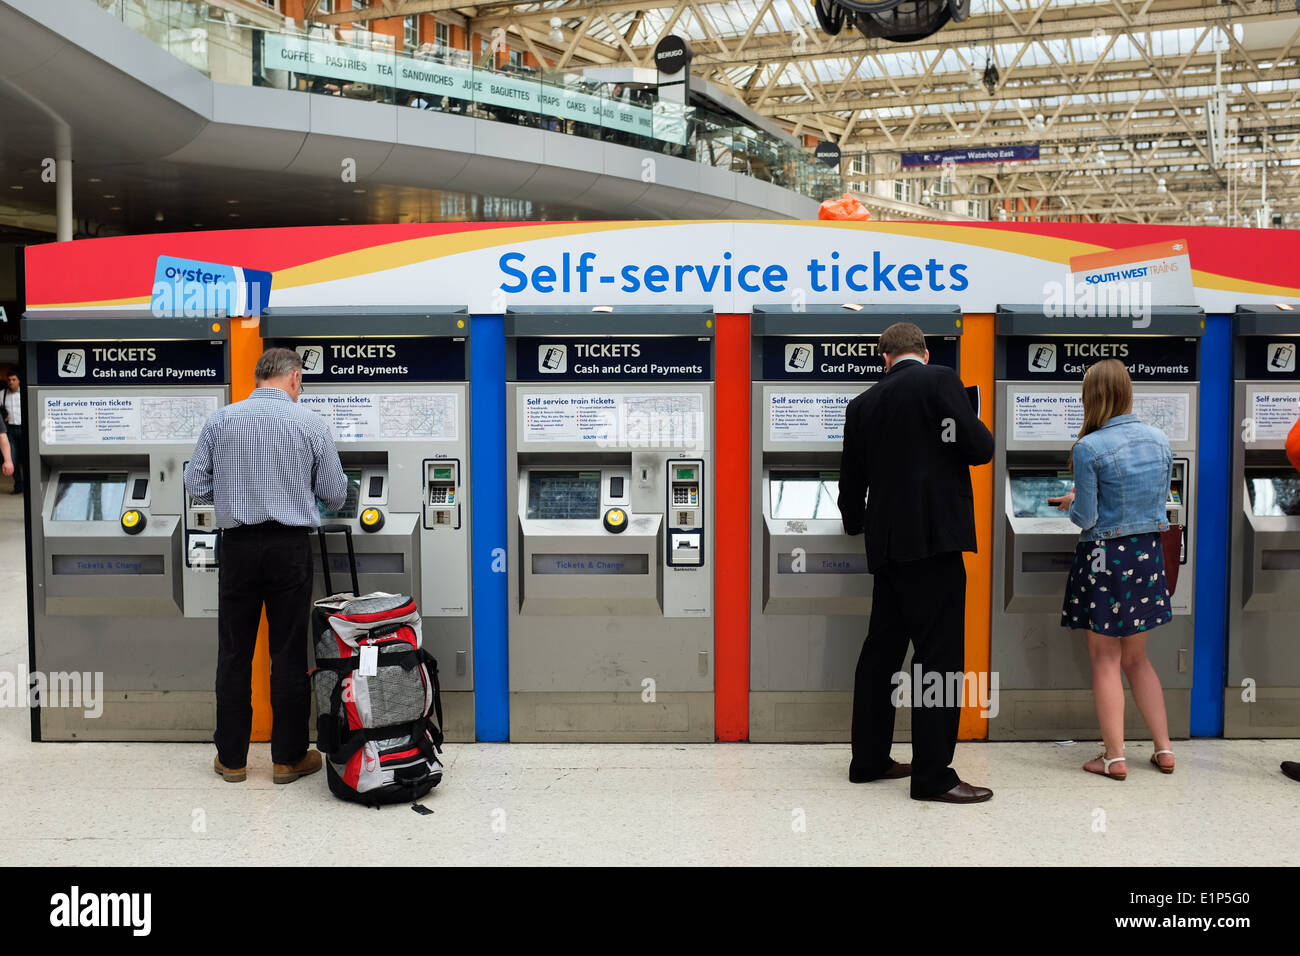 Autoservicio de máquinas expendedoras de billetes en la estación de trenes de Waterloo en Londres, Reino Unido. Foto de stock